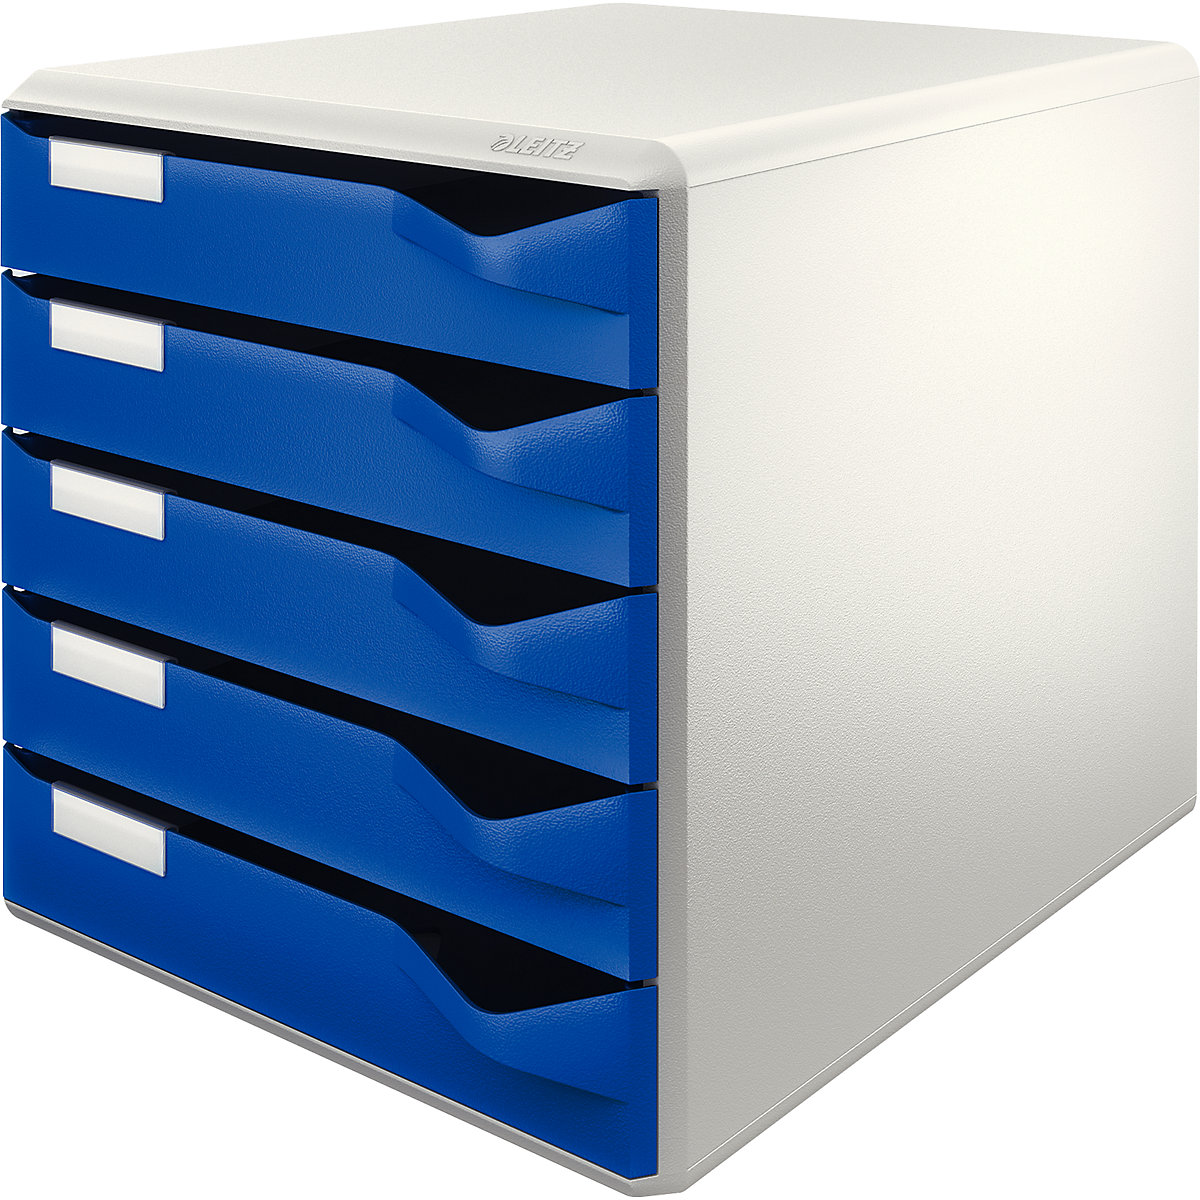 Leitz – Bloc-tiroirs, kit de rangement pour courrier et formulaires, coloris bâti gris, coloris tiroirs bleu, 5 tiroirs